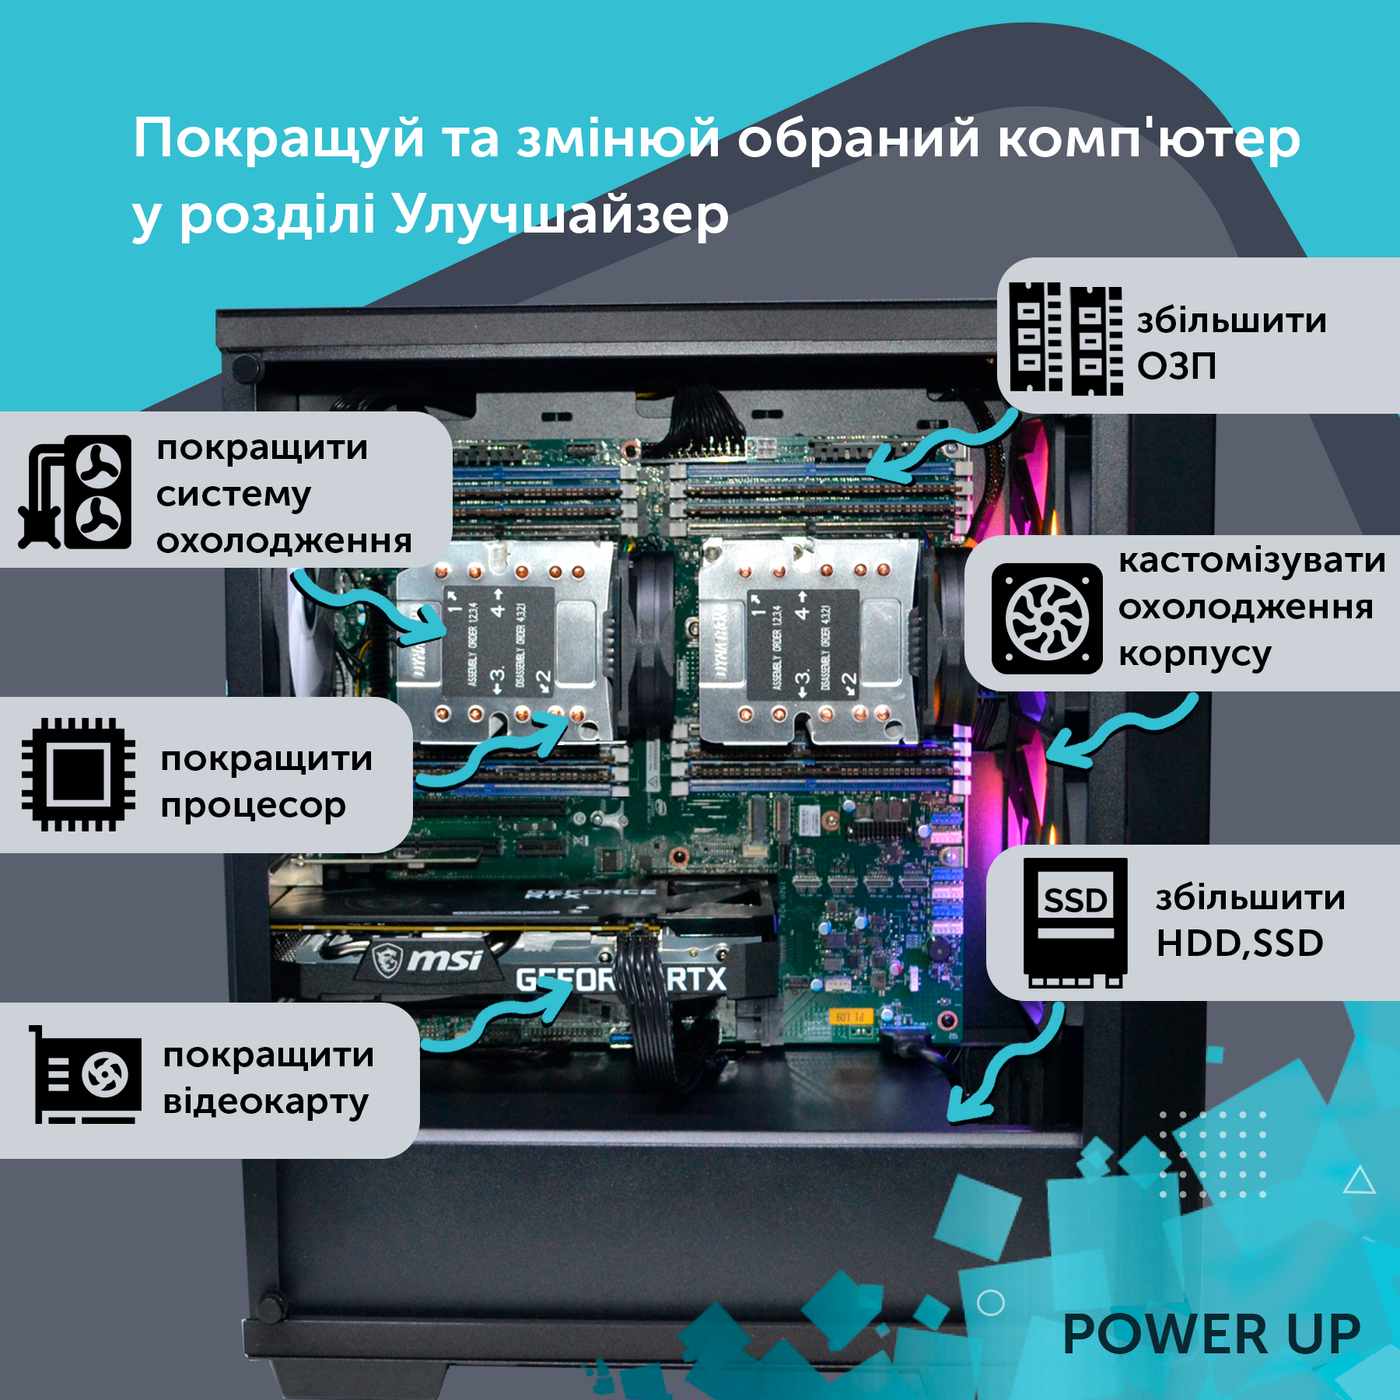 Рабочая станция PowerUp Desktop #62 Ryzen 9 5900x/32 GB/HDD 2 TB/SSD 512GB/GeForce RTX 3060 12GB